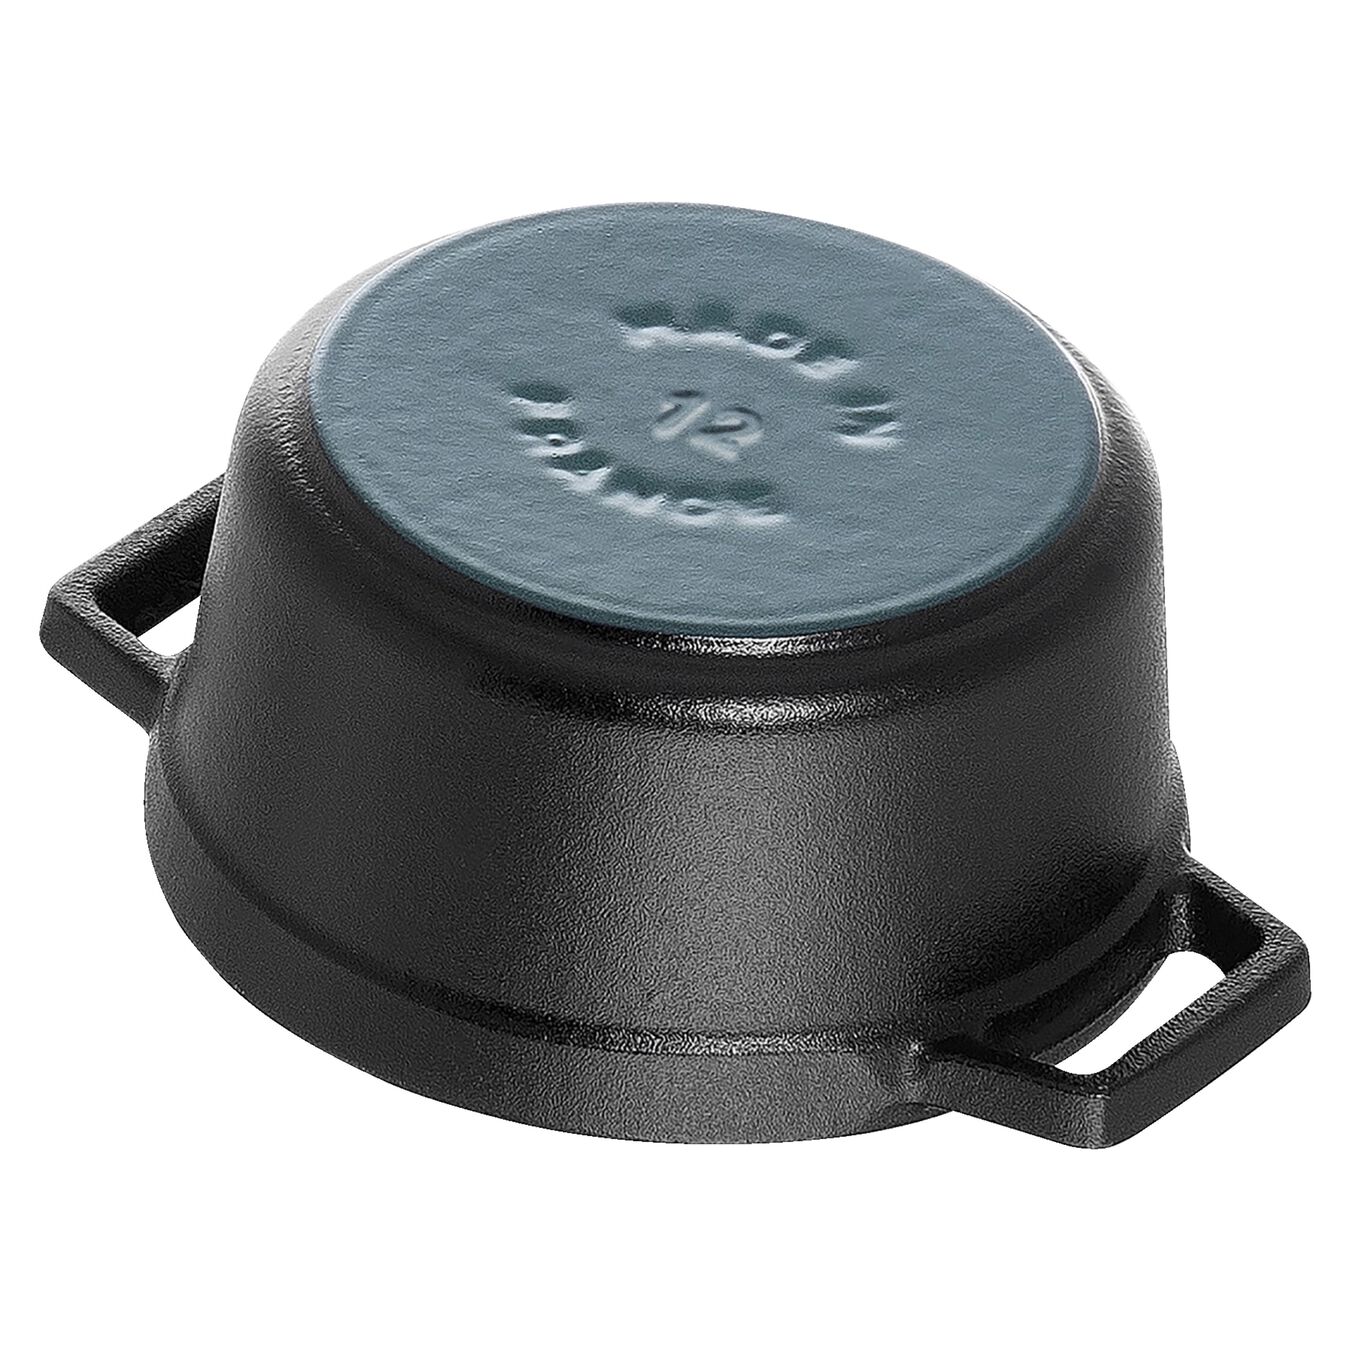 12 cm round Cast iron Cocotte black,,large 4